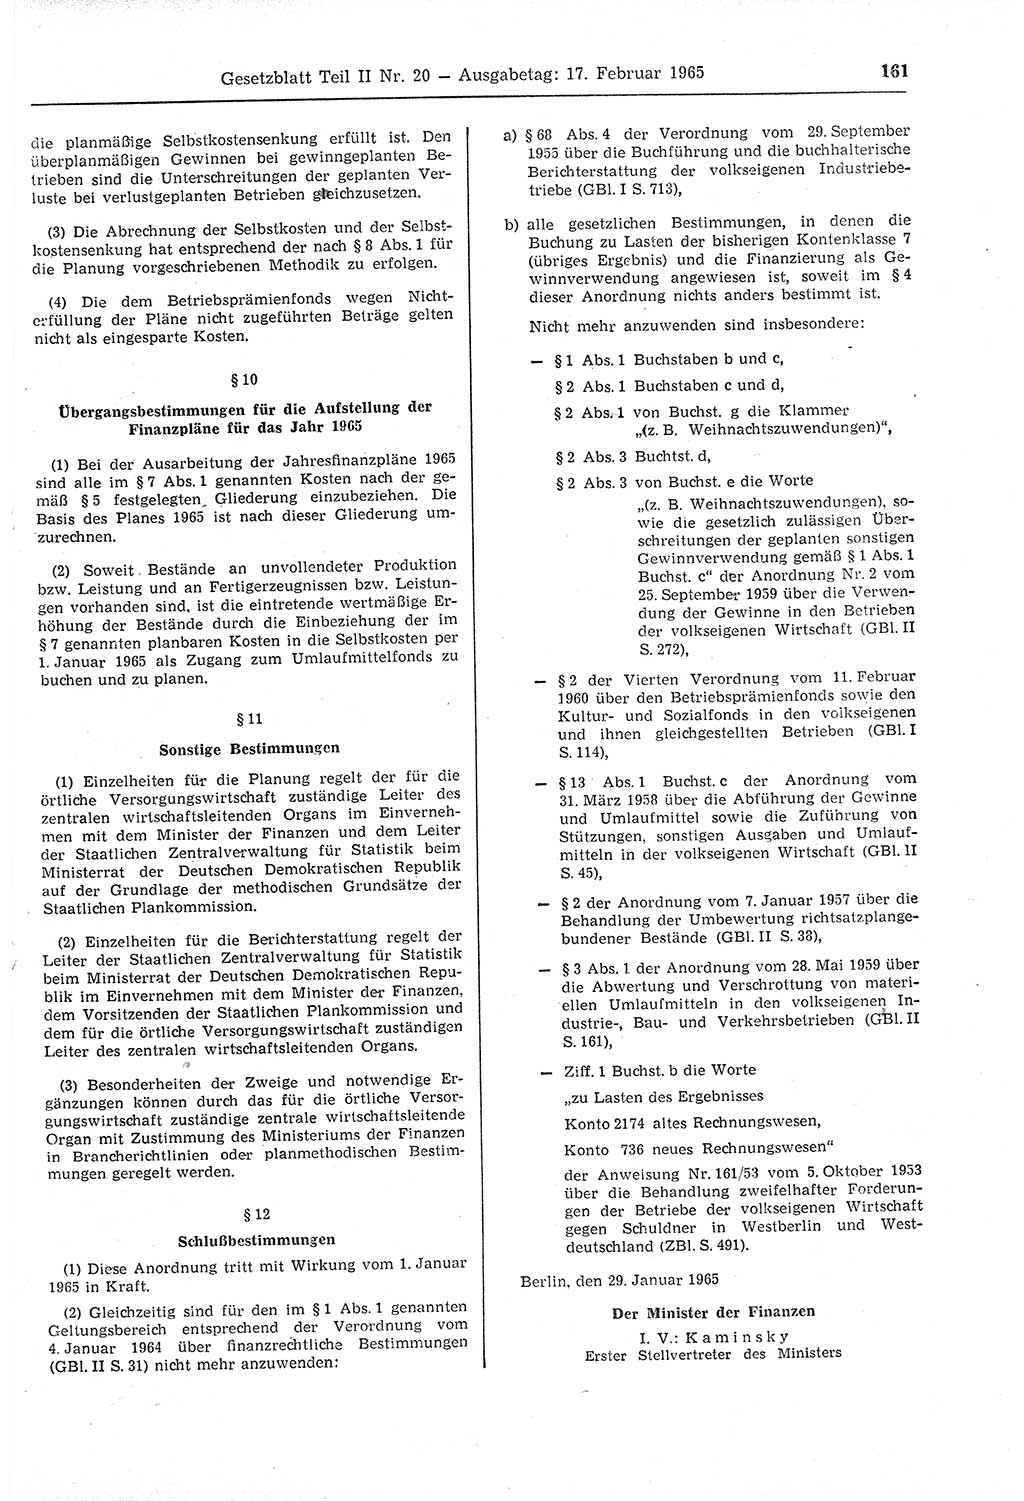 Gesetzblatt (GBl.) der Deutschen Demokratischen Republik (DDR) Teil ⅠⅠ 1965, Seite 161 (GBl. DDR ⅠⅠ 1965, S. 161)